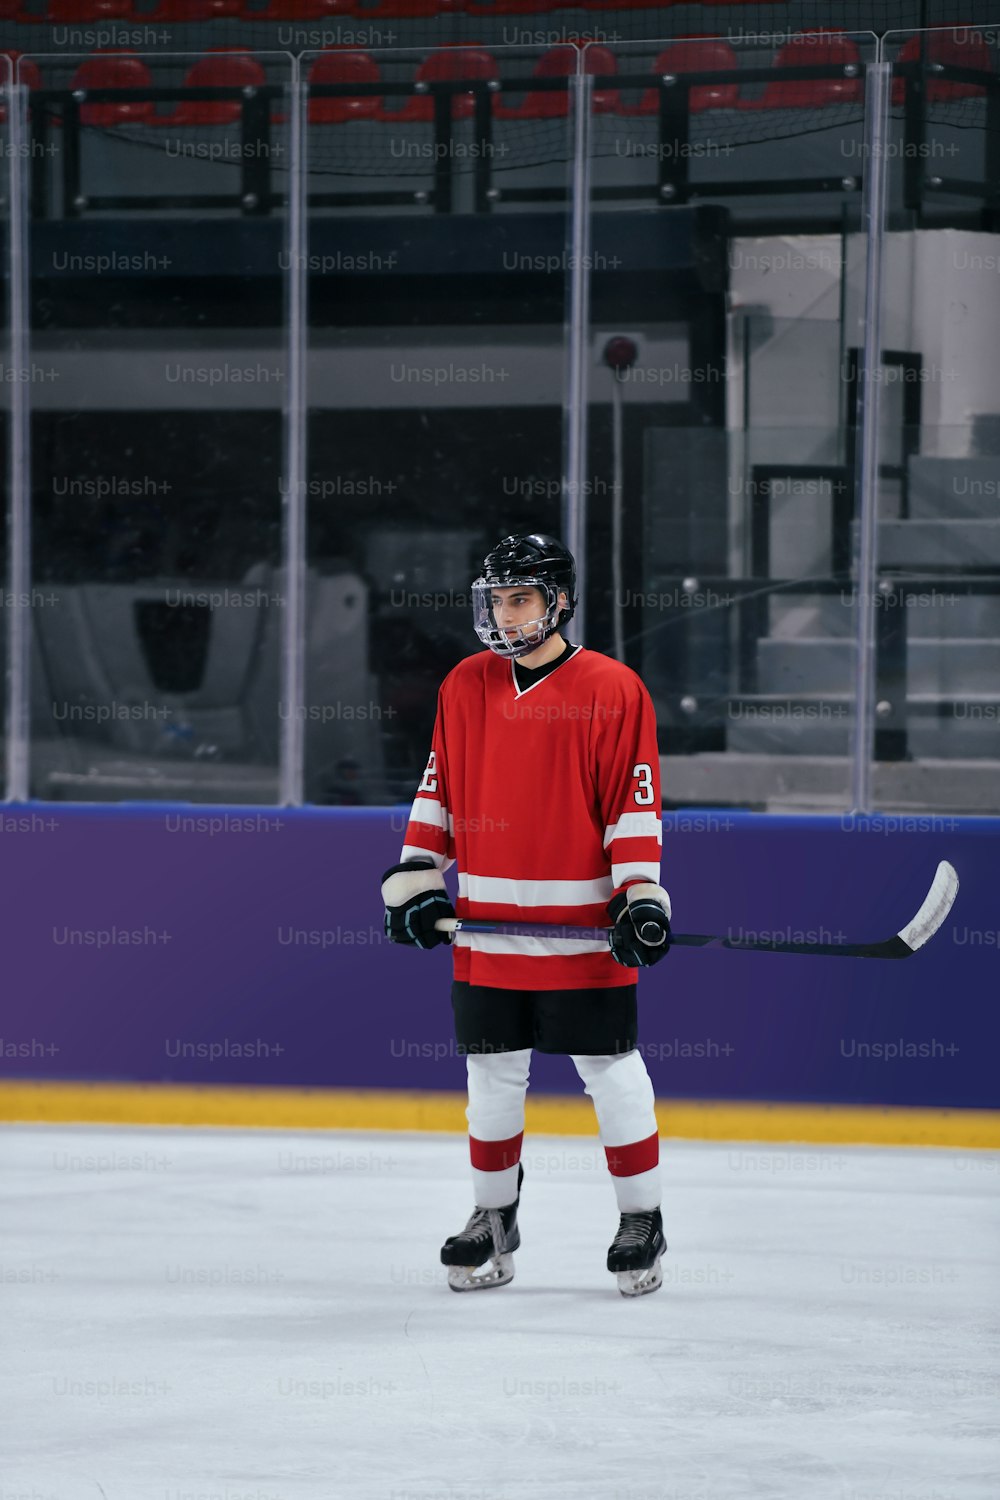 Un jugador de hockey parado en el hielo con un palo